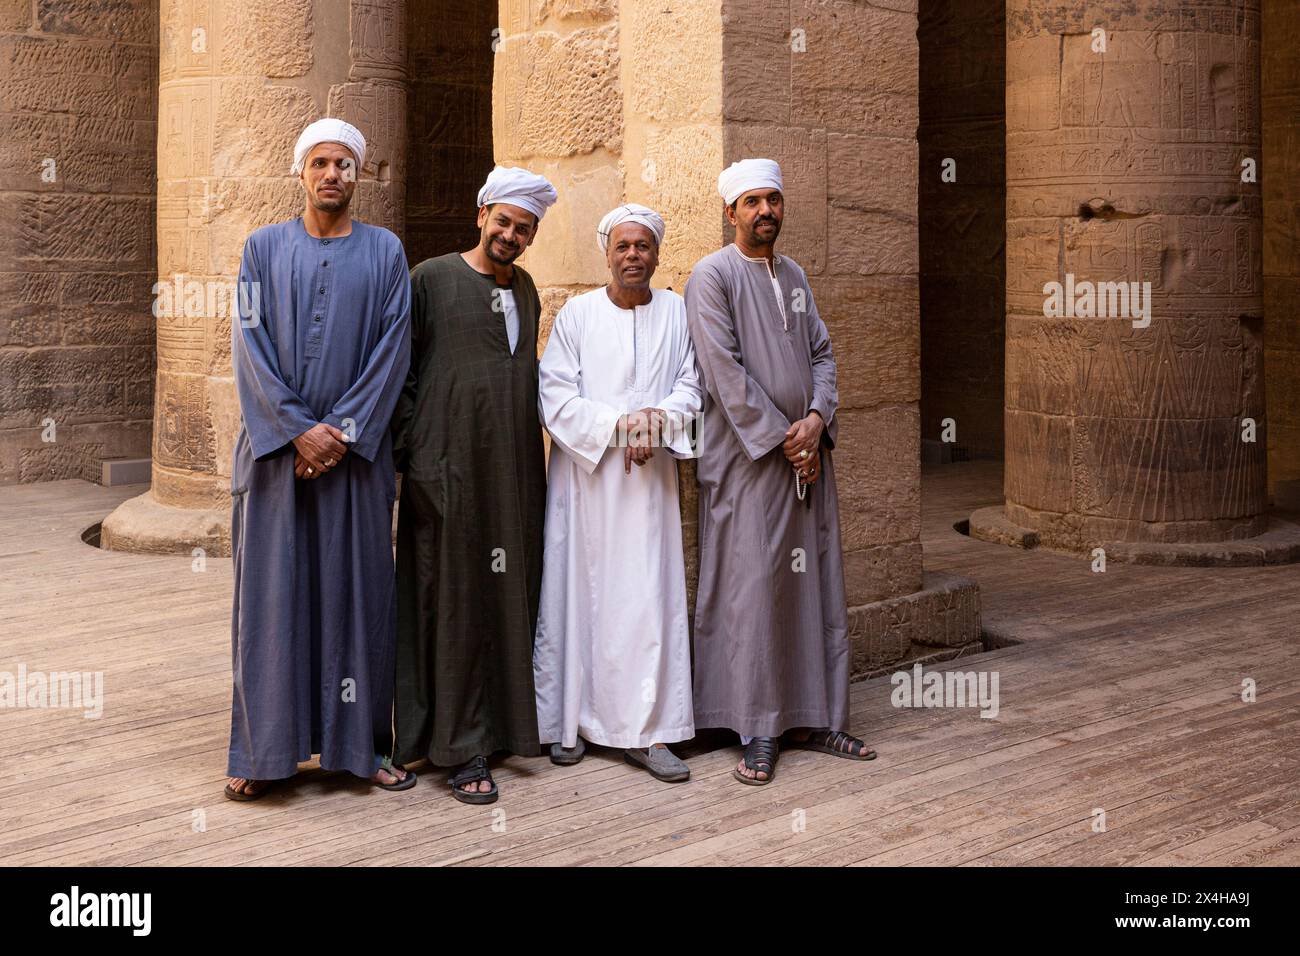 Hommes égyptiens en tenue traditionnelle au temple d'Isis à l'intérieur du complexe du temple de Philae (site du patrimoine mondial de l'UNESCO) sur l'île d'Agilkia, Egypte Banque D'Images